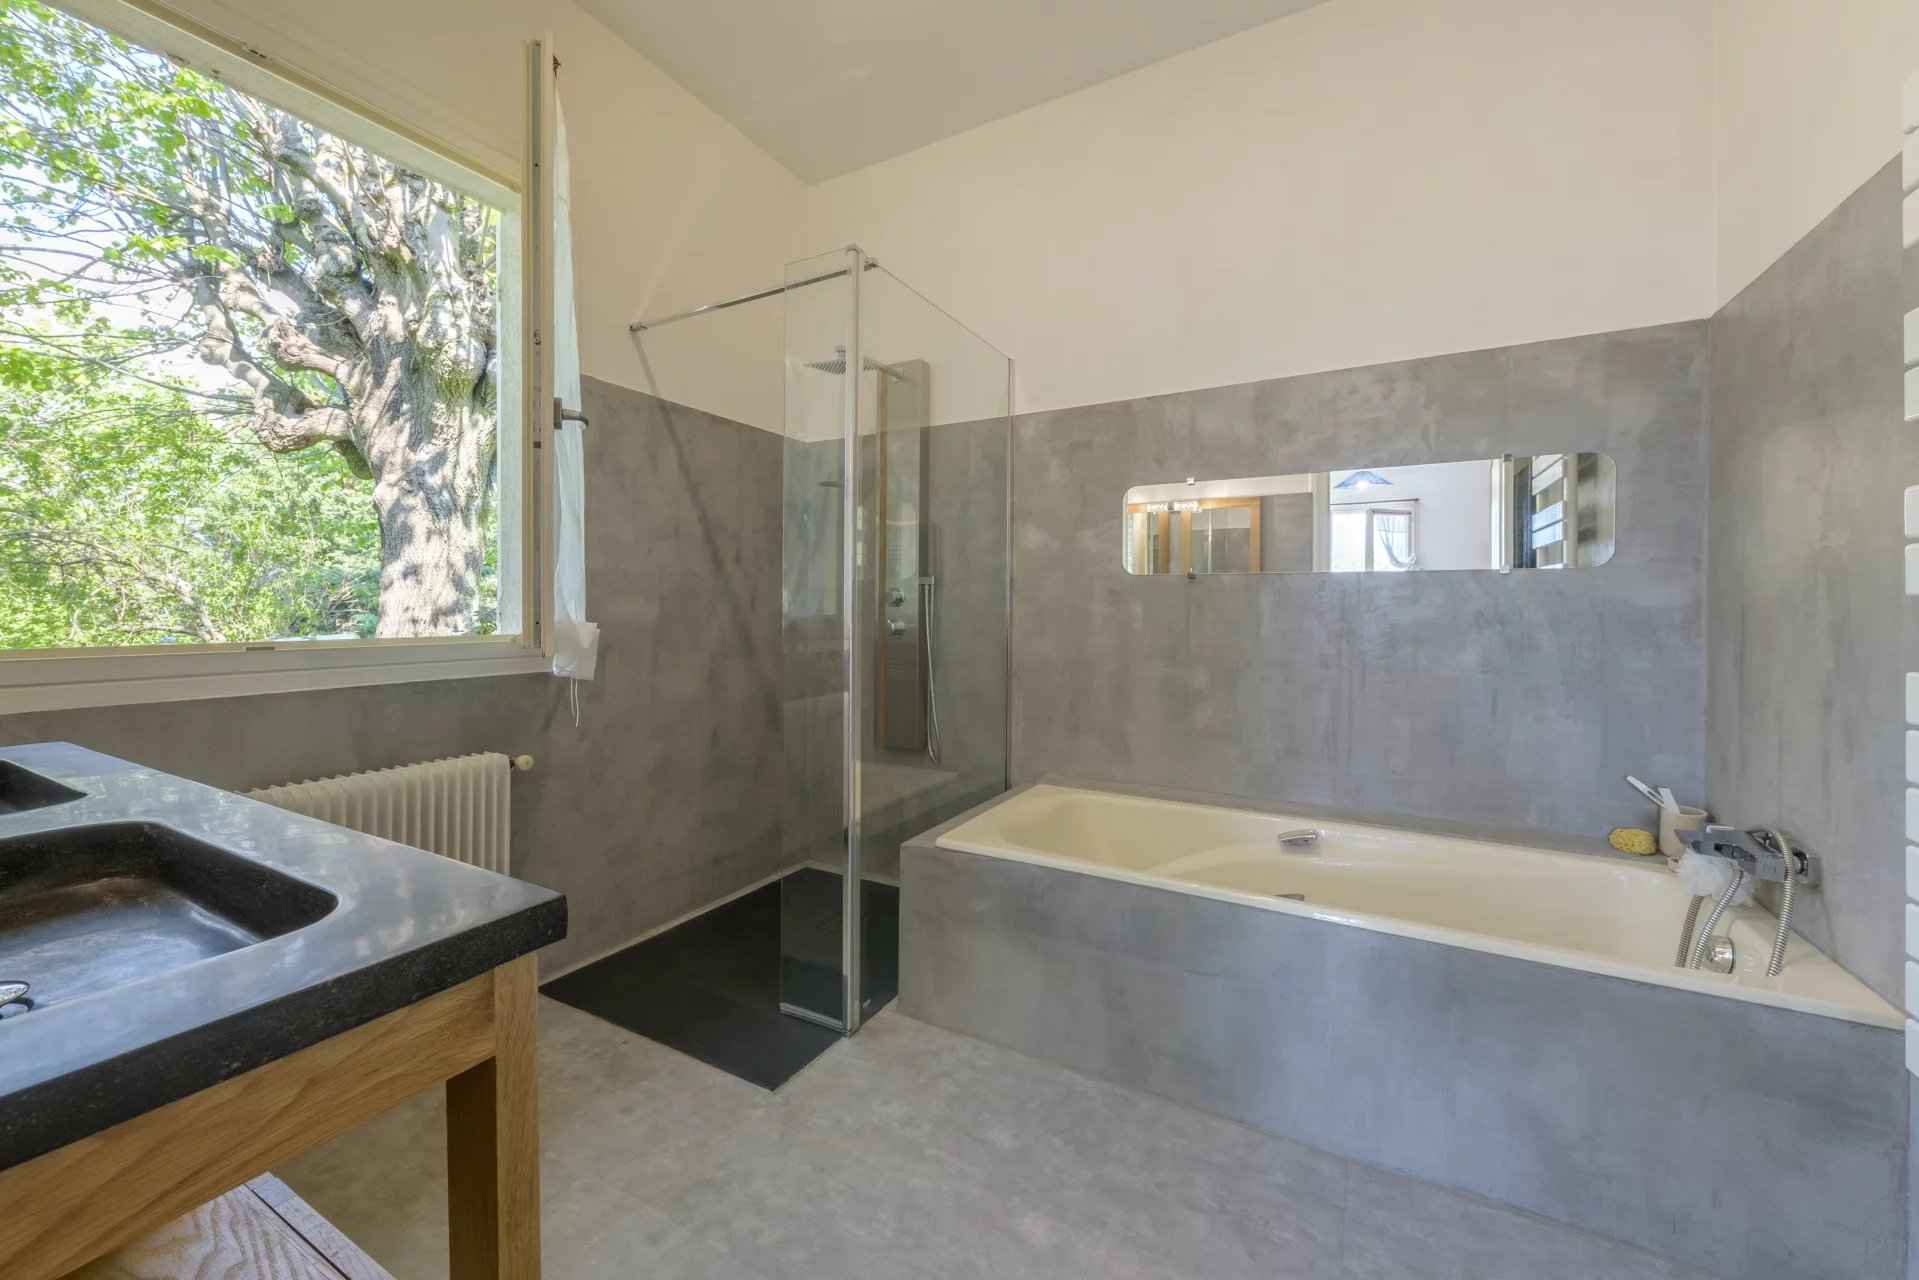 Barnes Lyon, agence immobilière de prestige - Salle de bains d'une maison à Trévoux